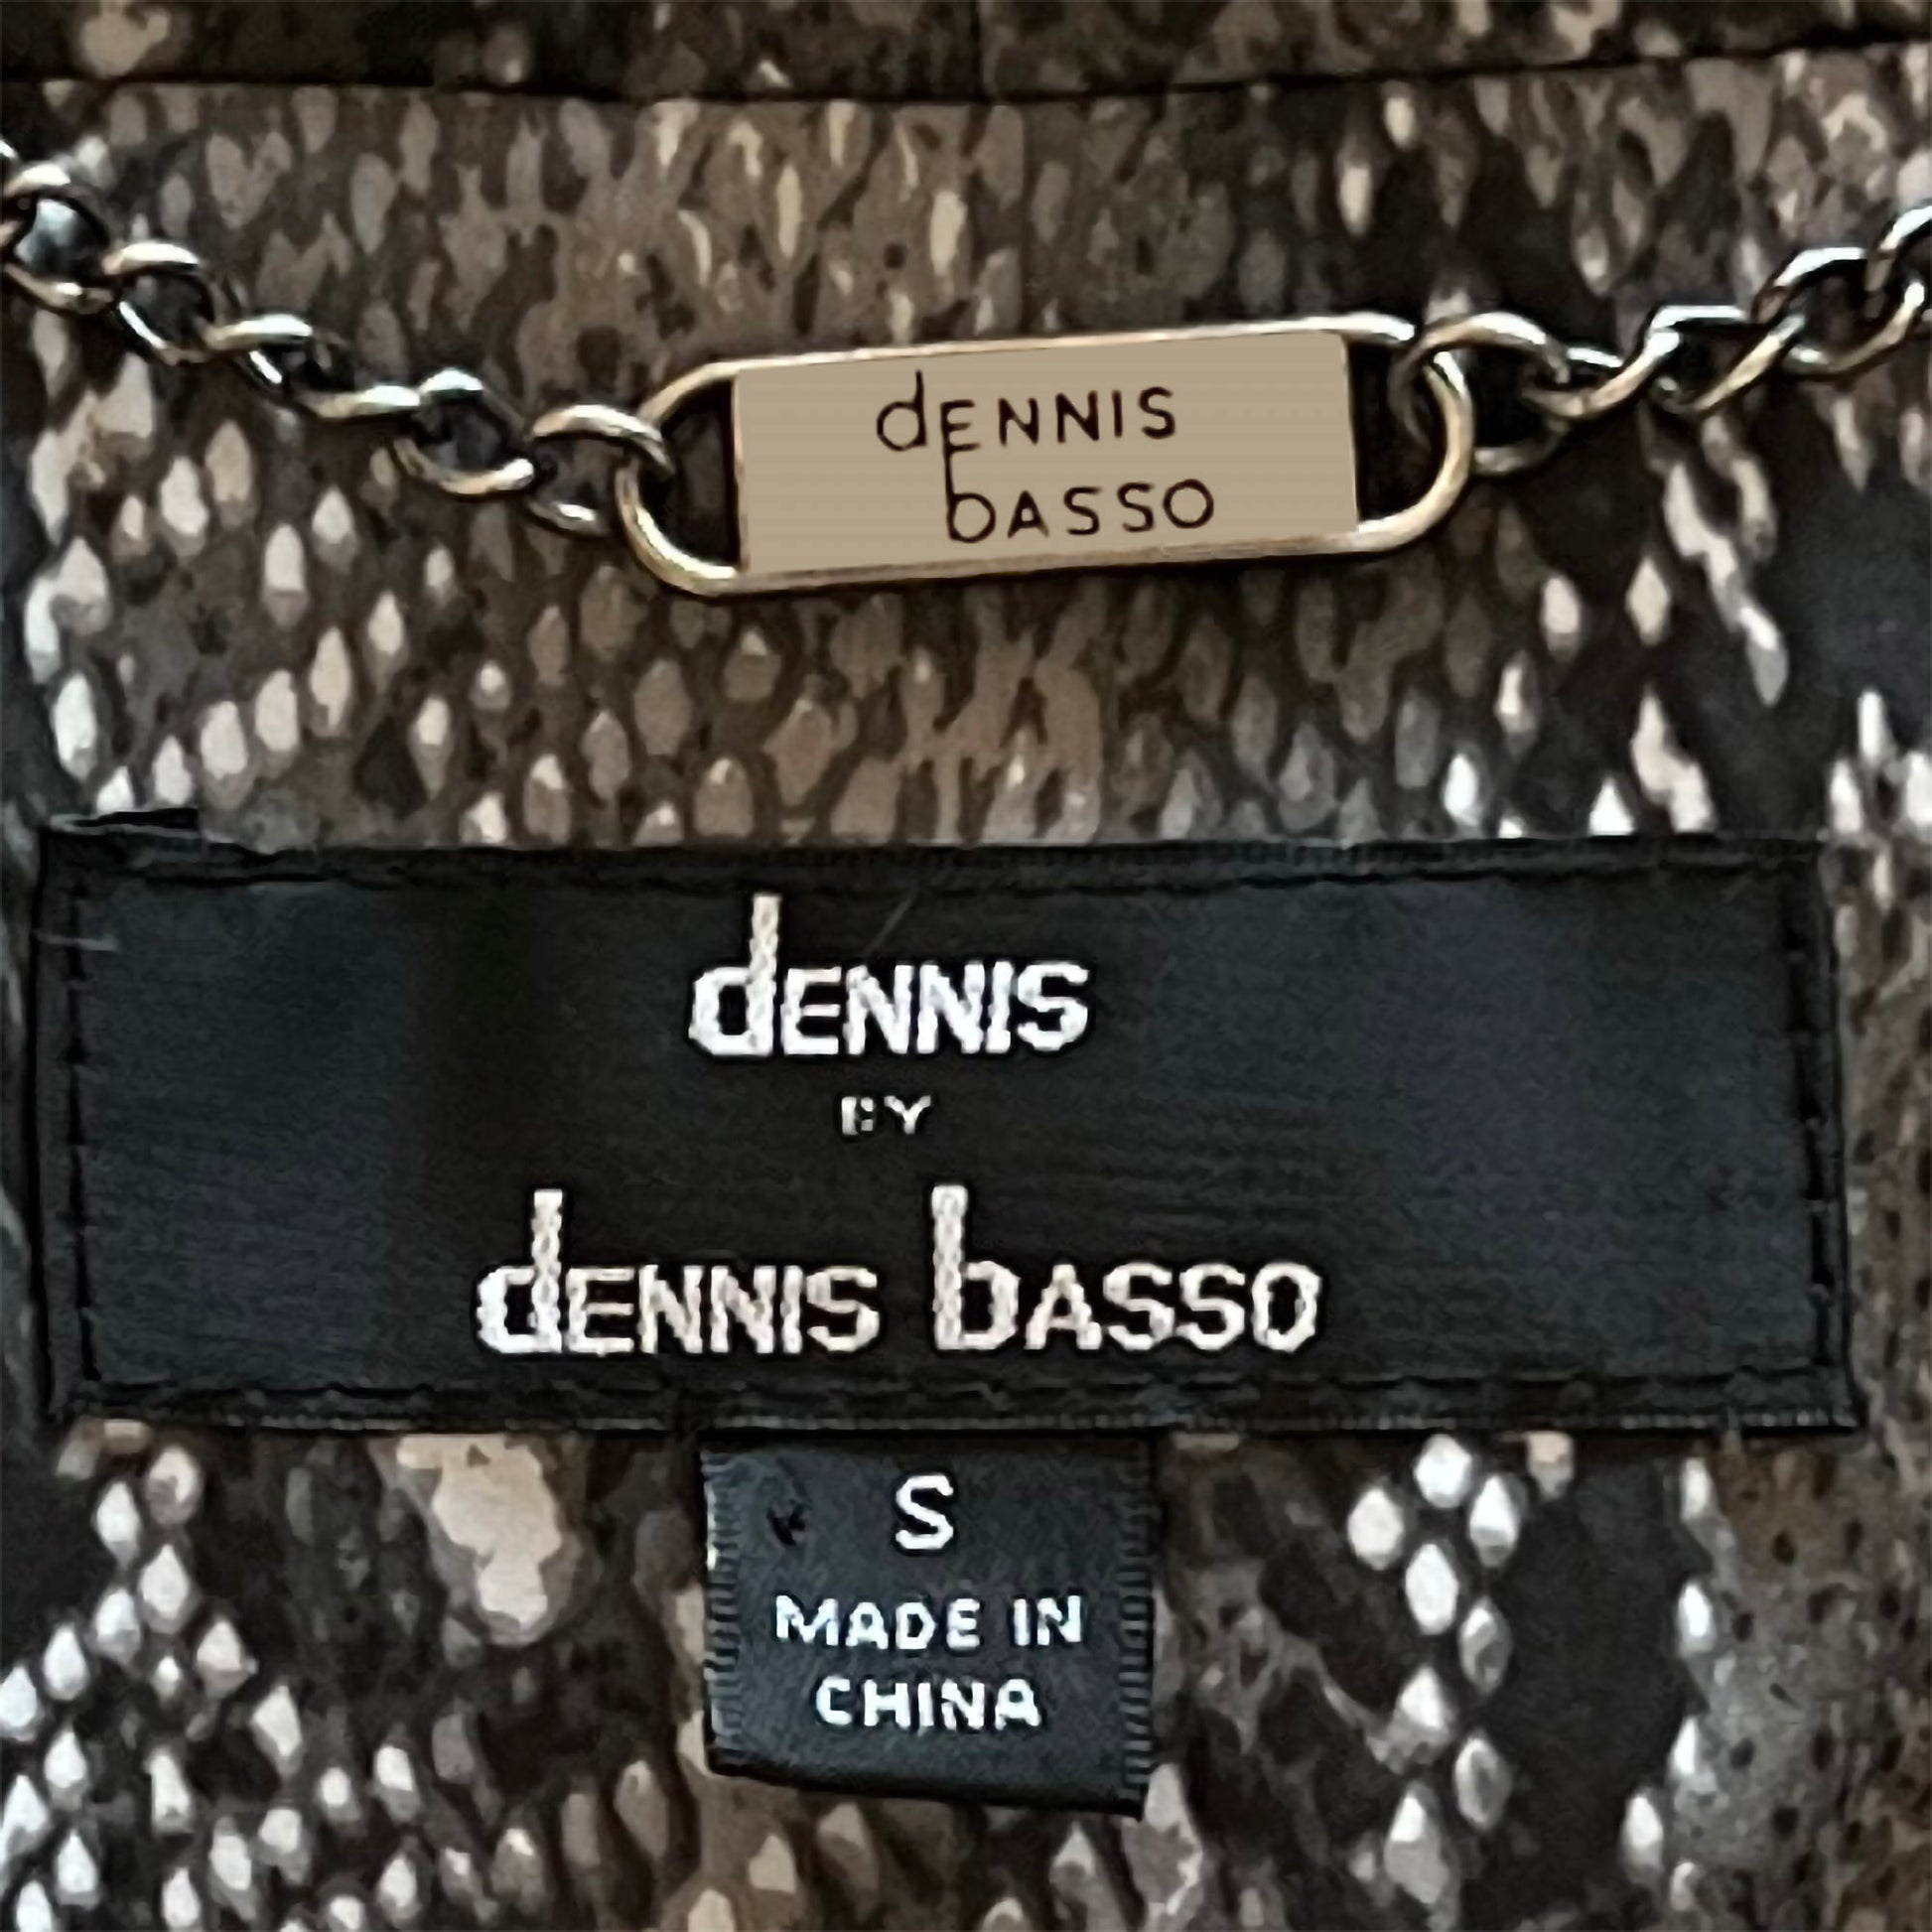 Dennis-Basso-logo